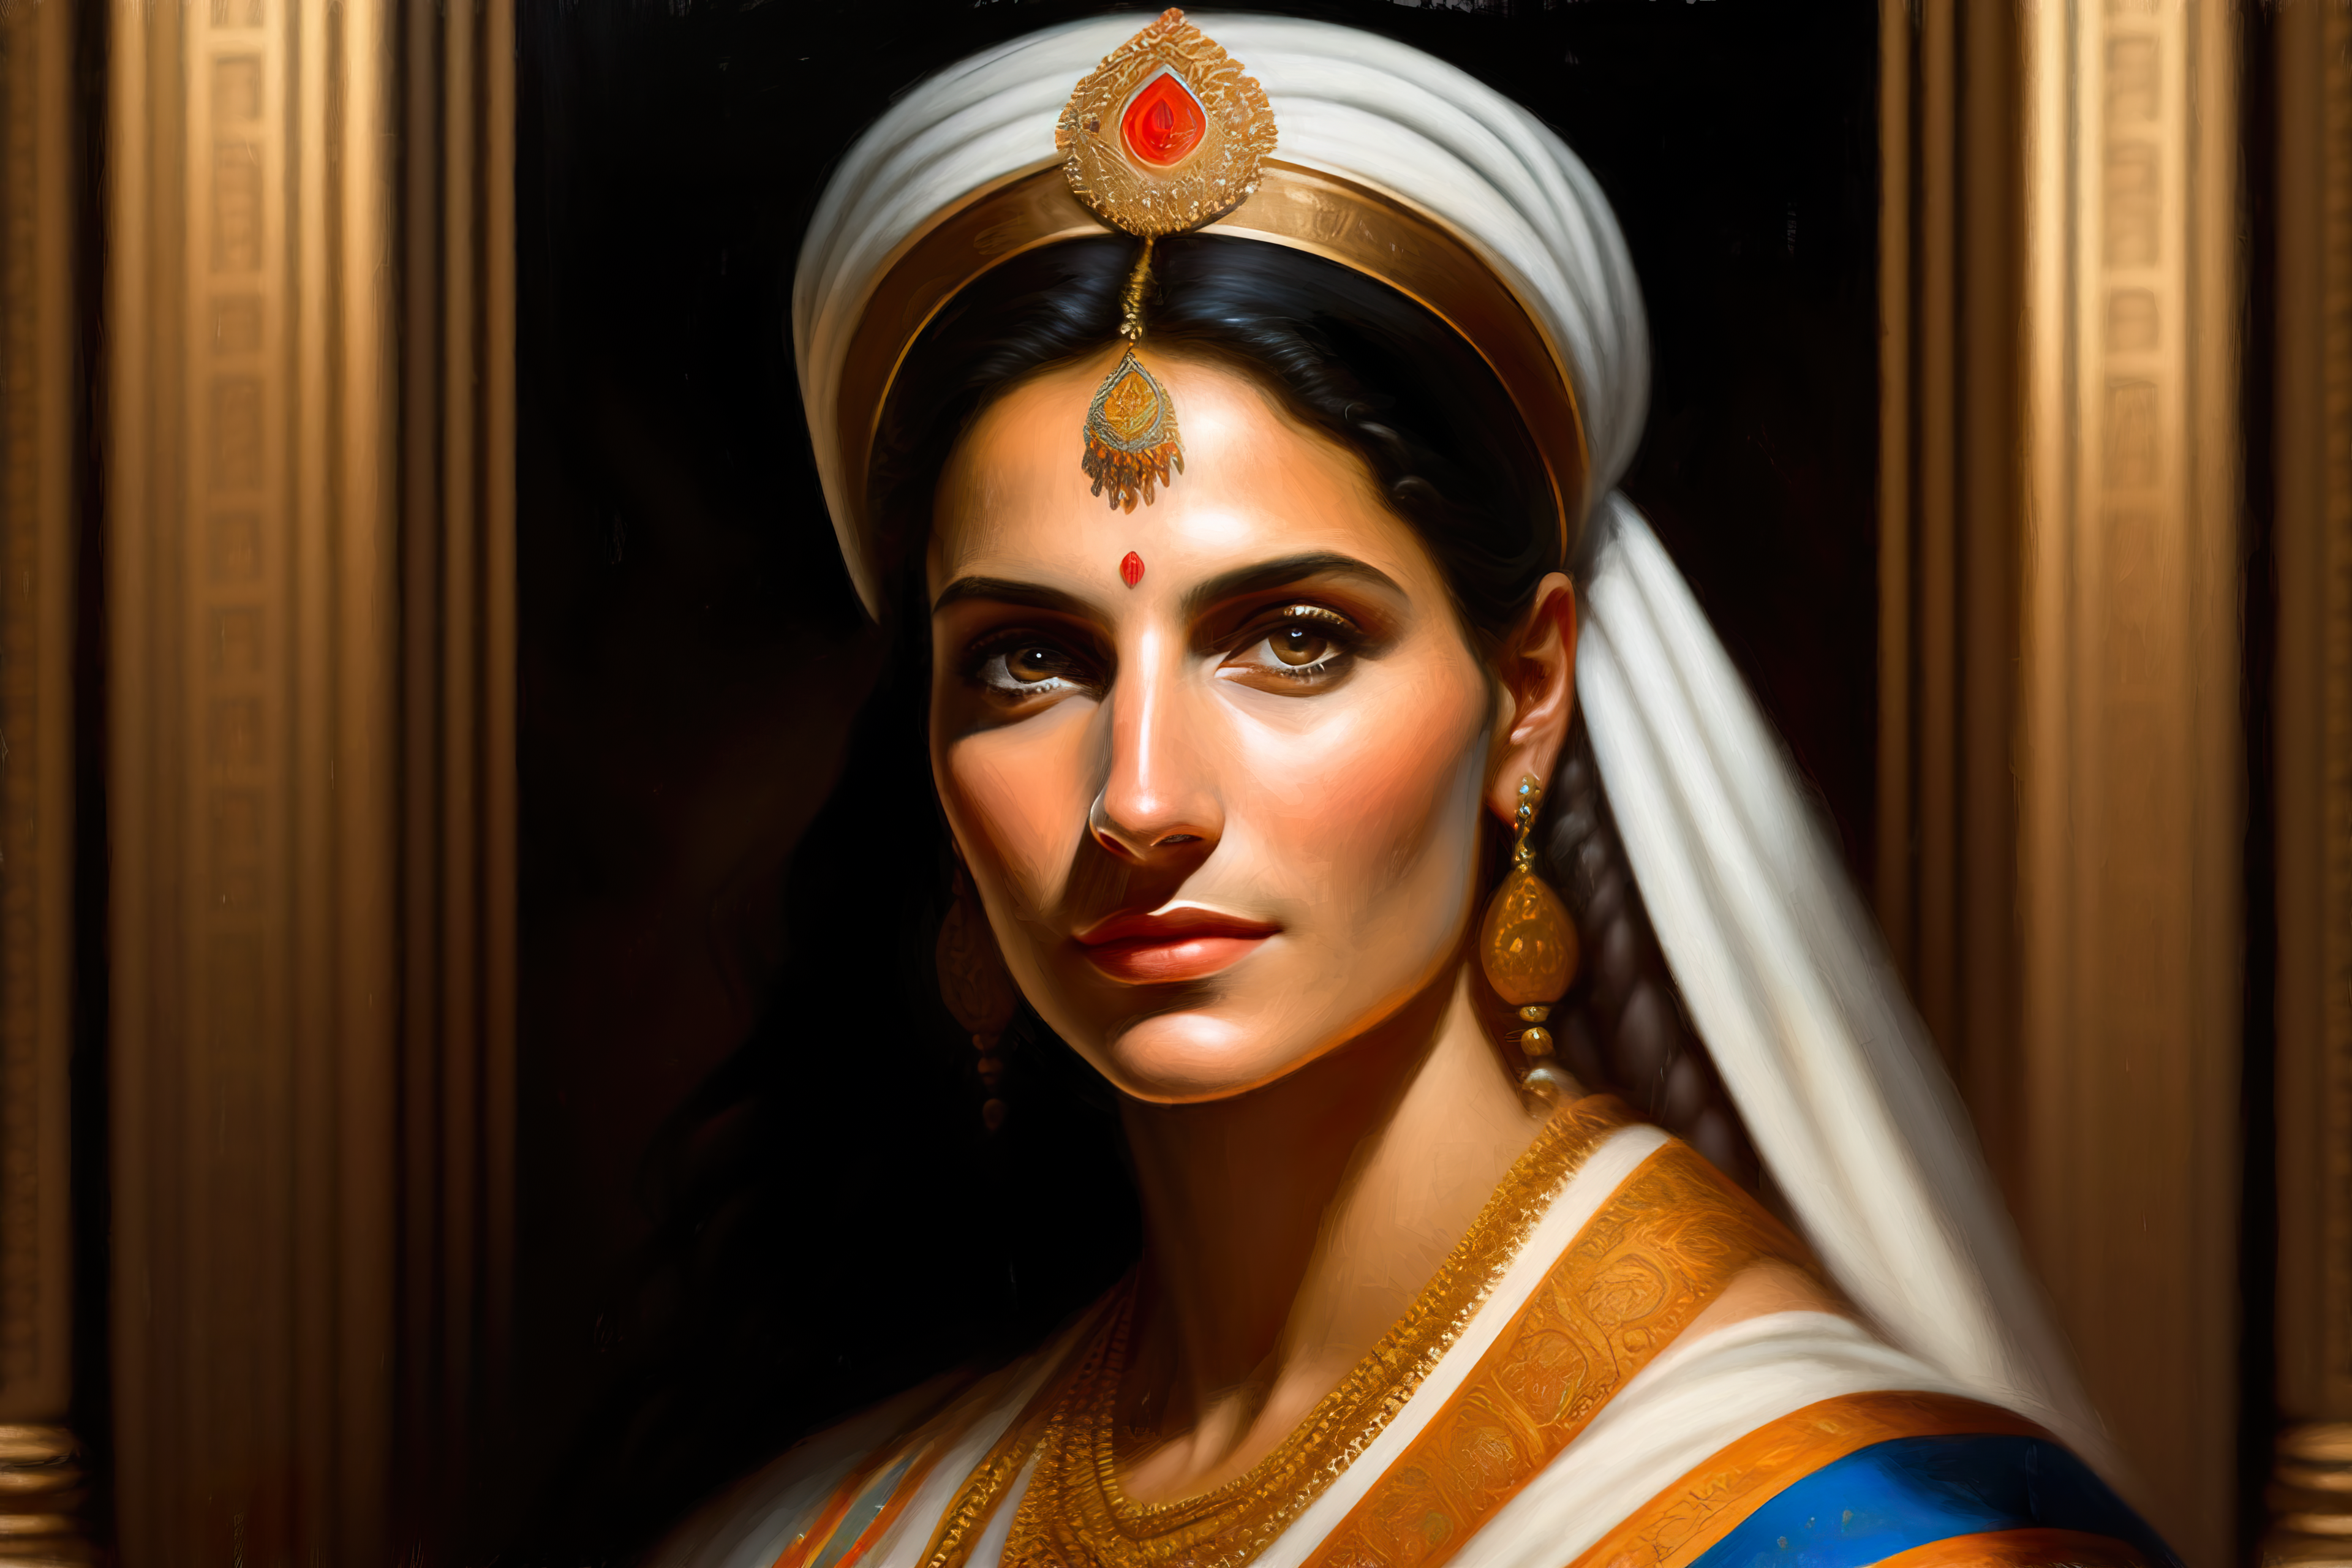 General 3840x2560 Lexica AI art portrait women oil painting hat Greek women vibrant detailed face